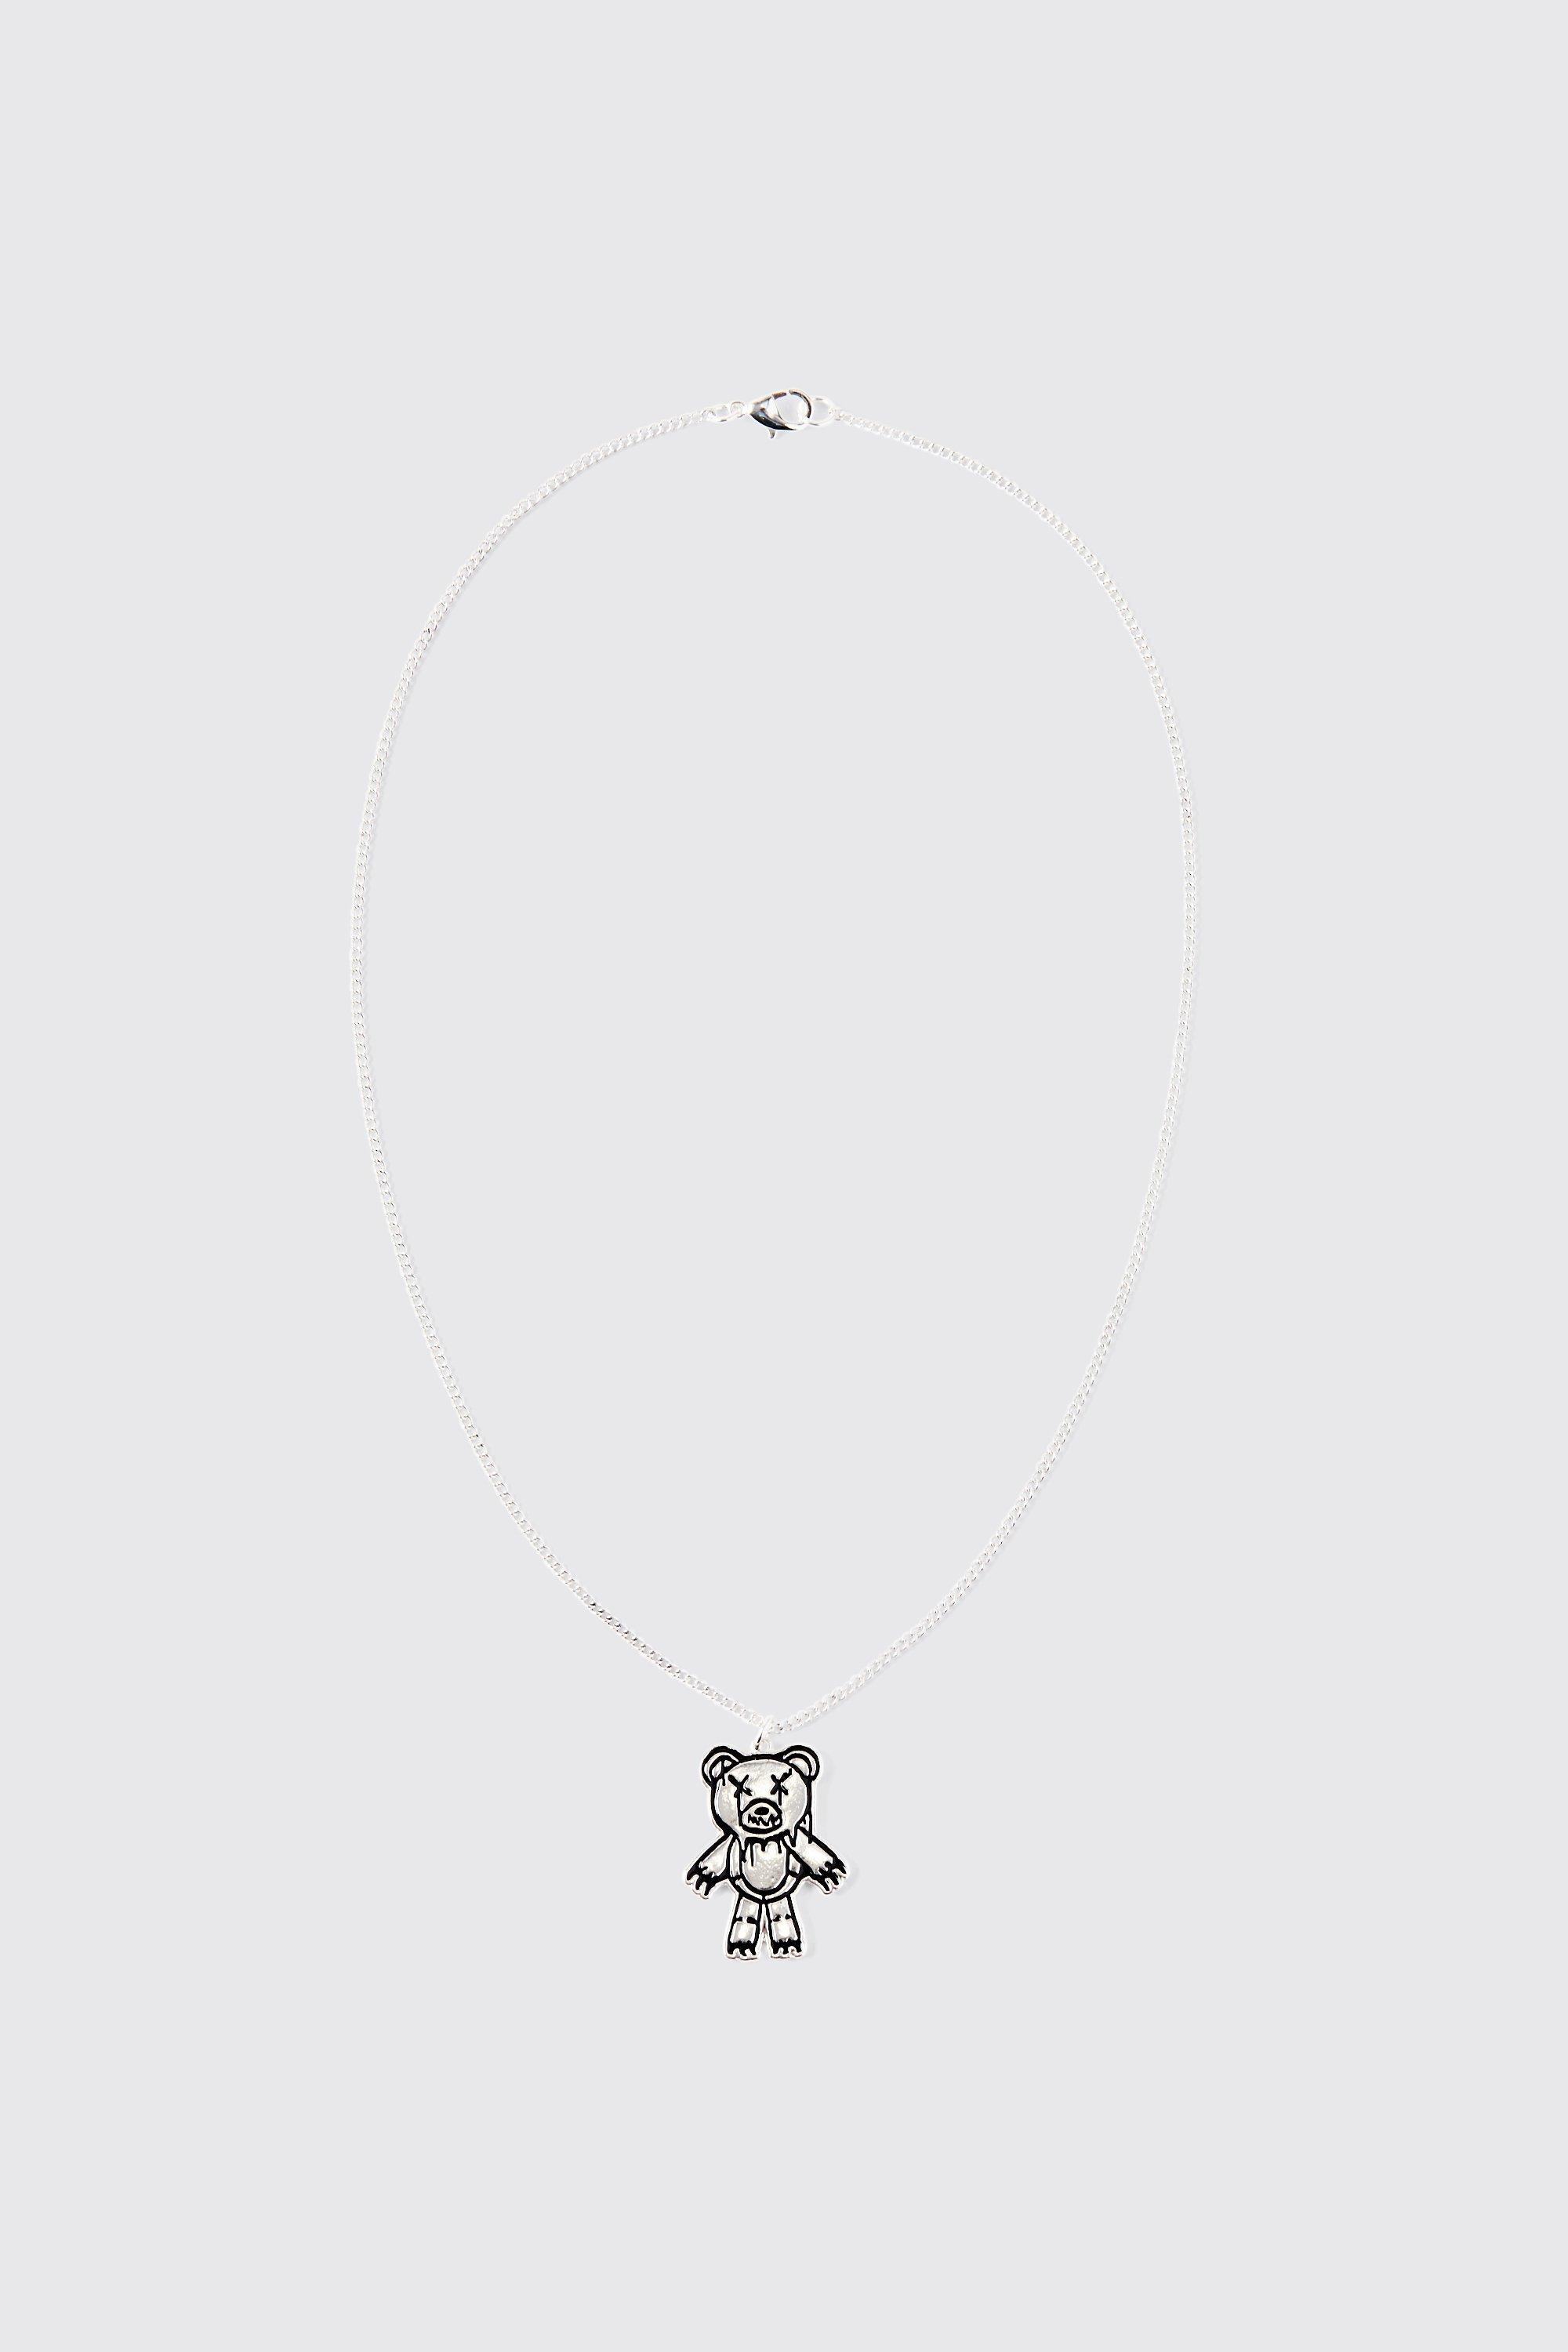 collier à pendentif ours homme - argent - one size, argent